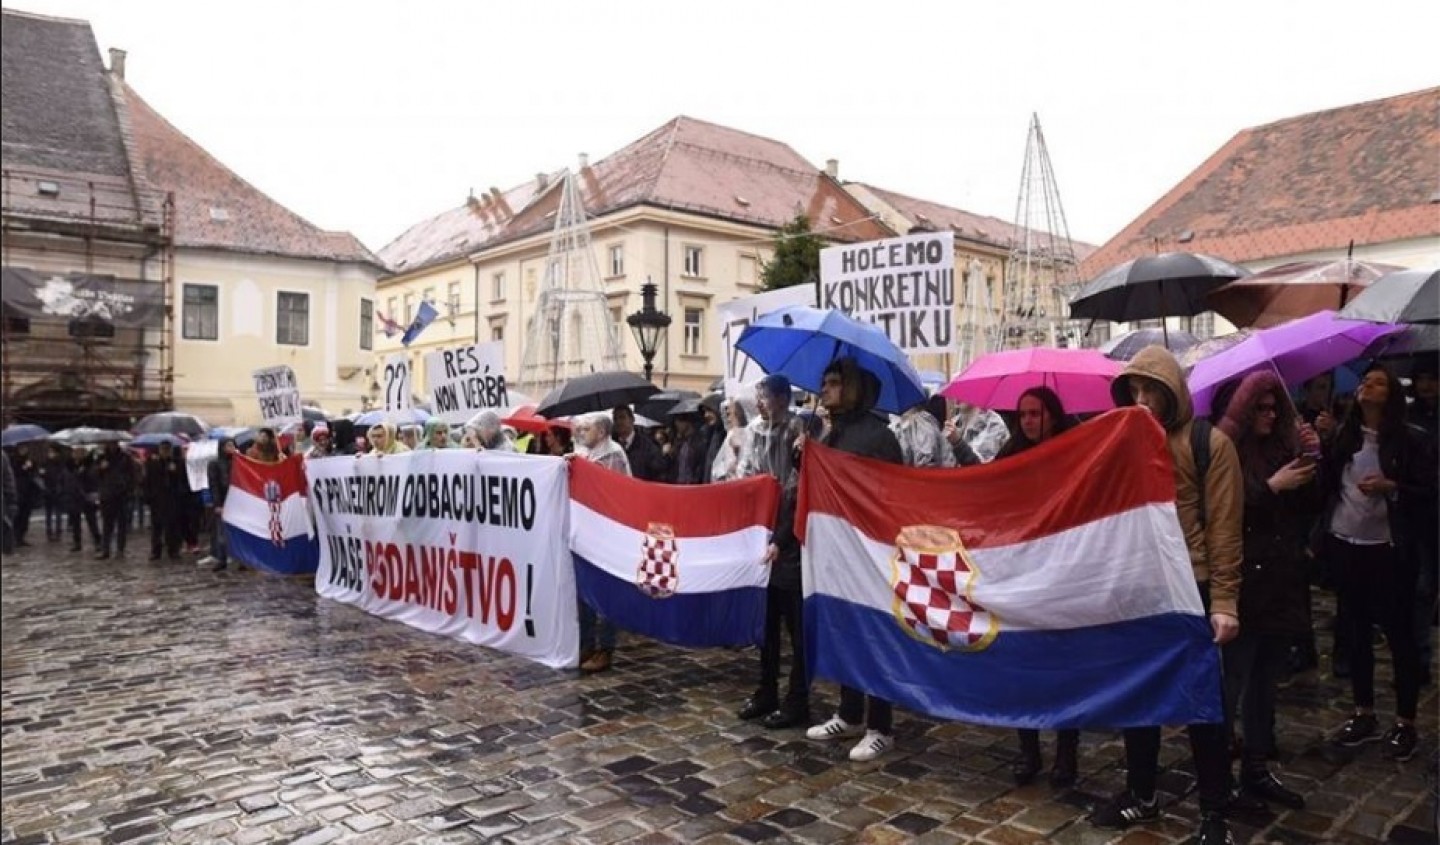 Zašto hrvatski mediji skrivaju da se zbio veliki prosvjed u centru zagreba?!